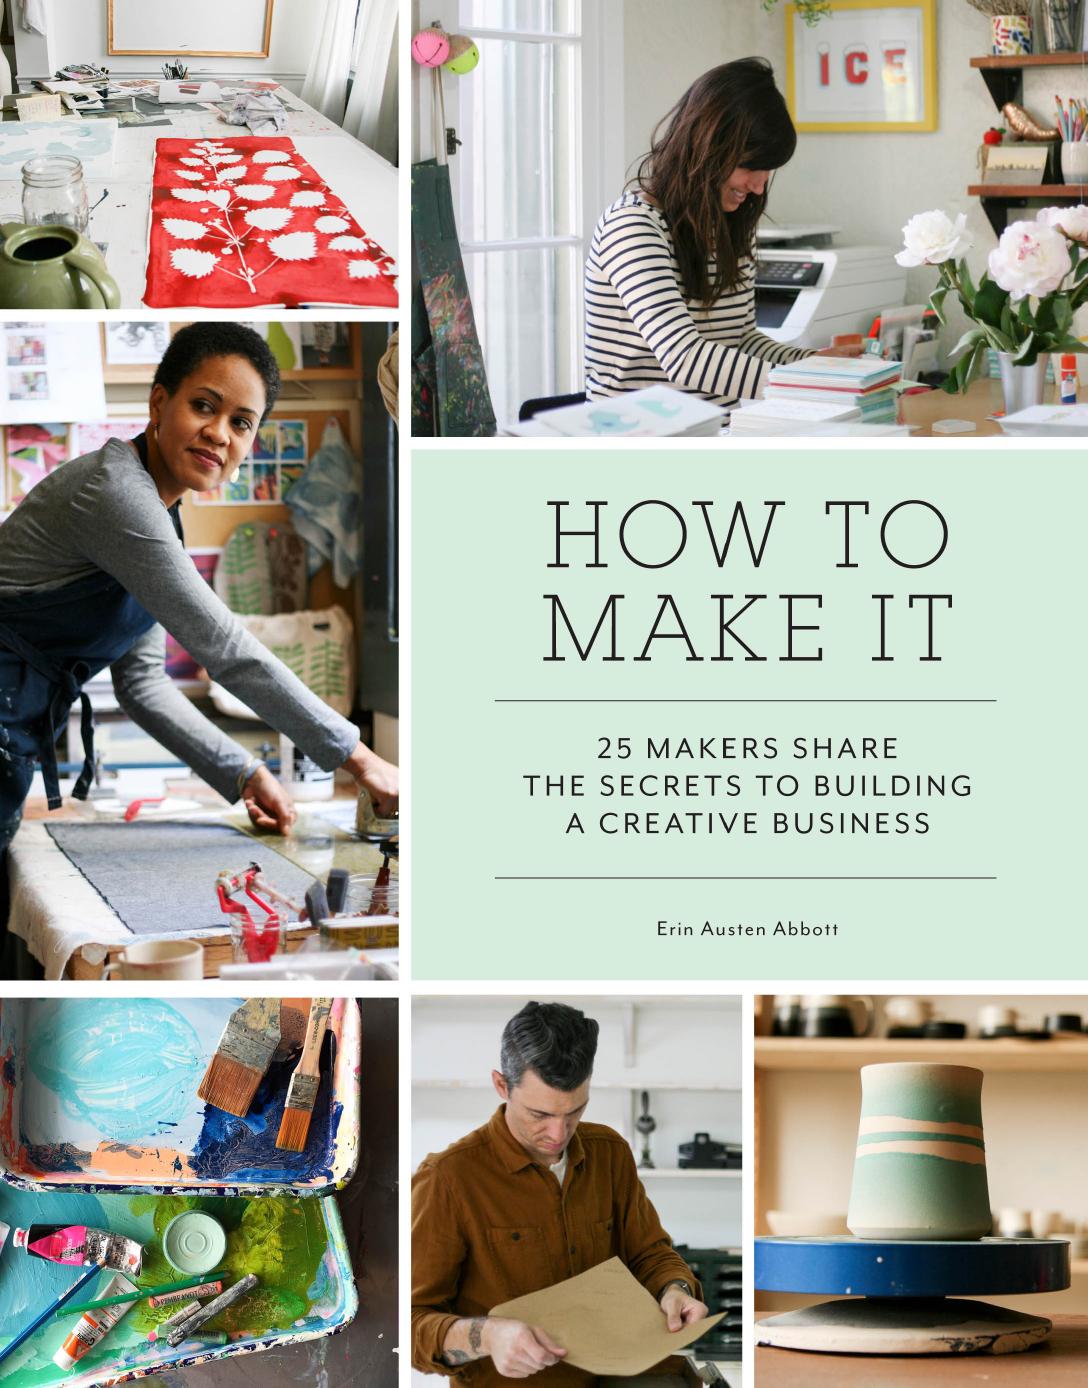 How to Make It by Erin Austen Abbott